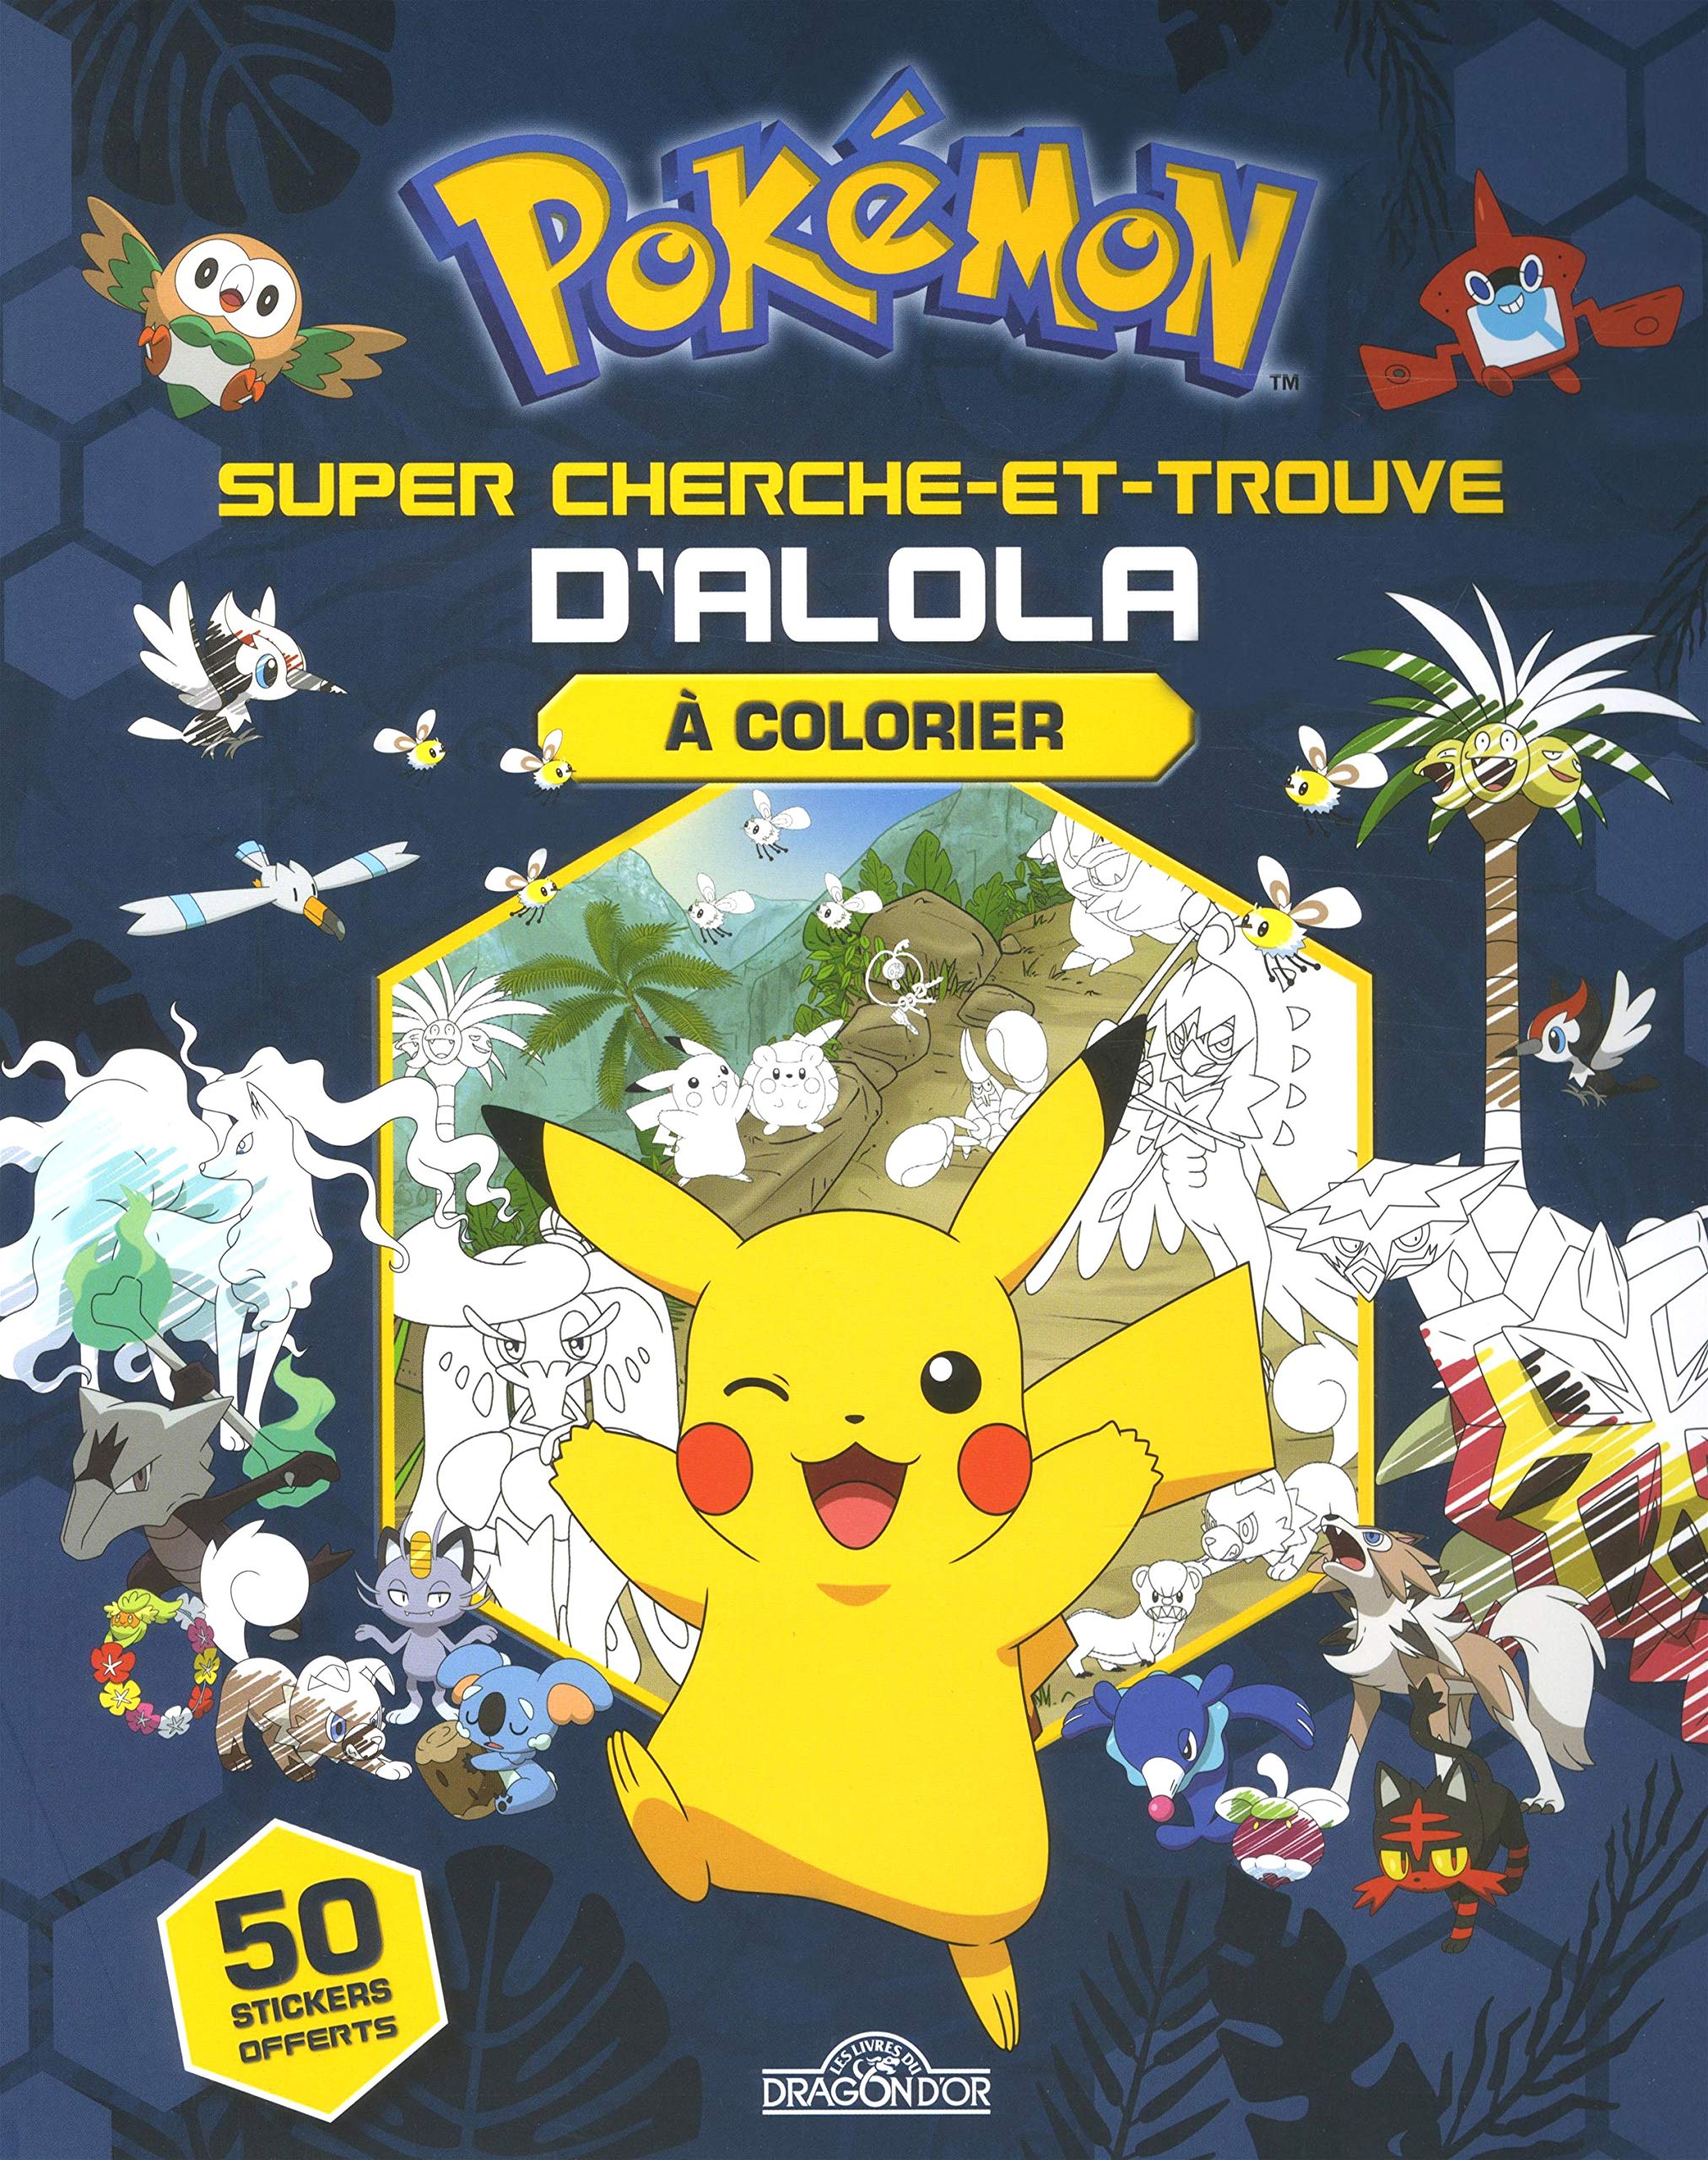 Super cherche-et-trouve d'Alola à colorier - The Pokémon Company